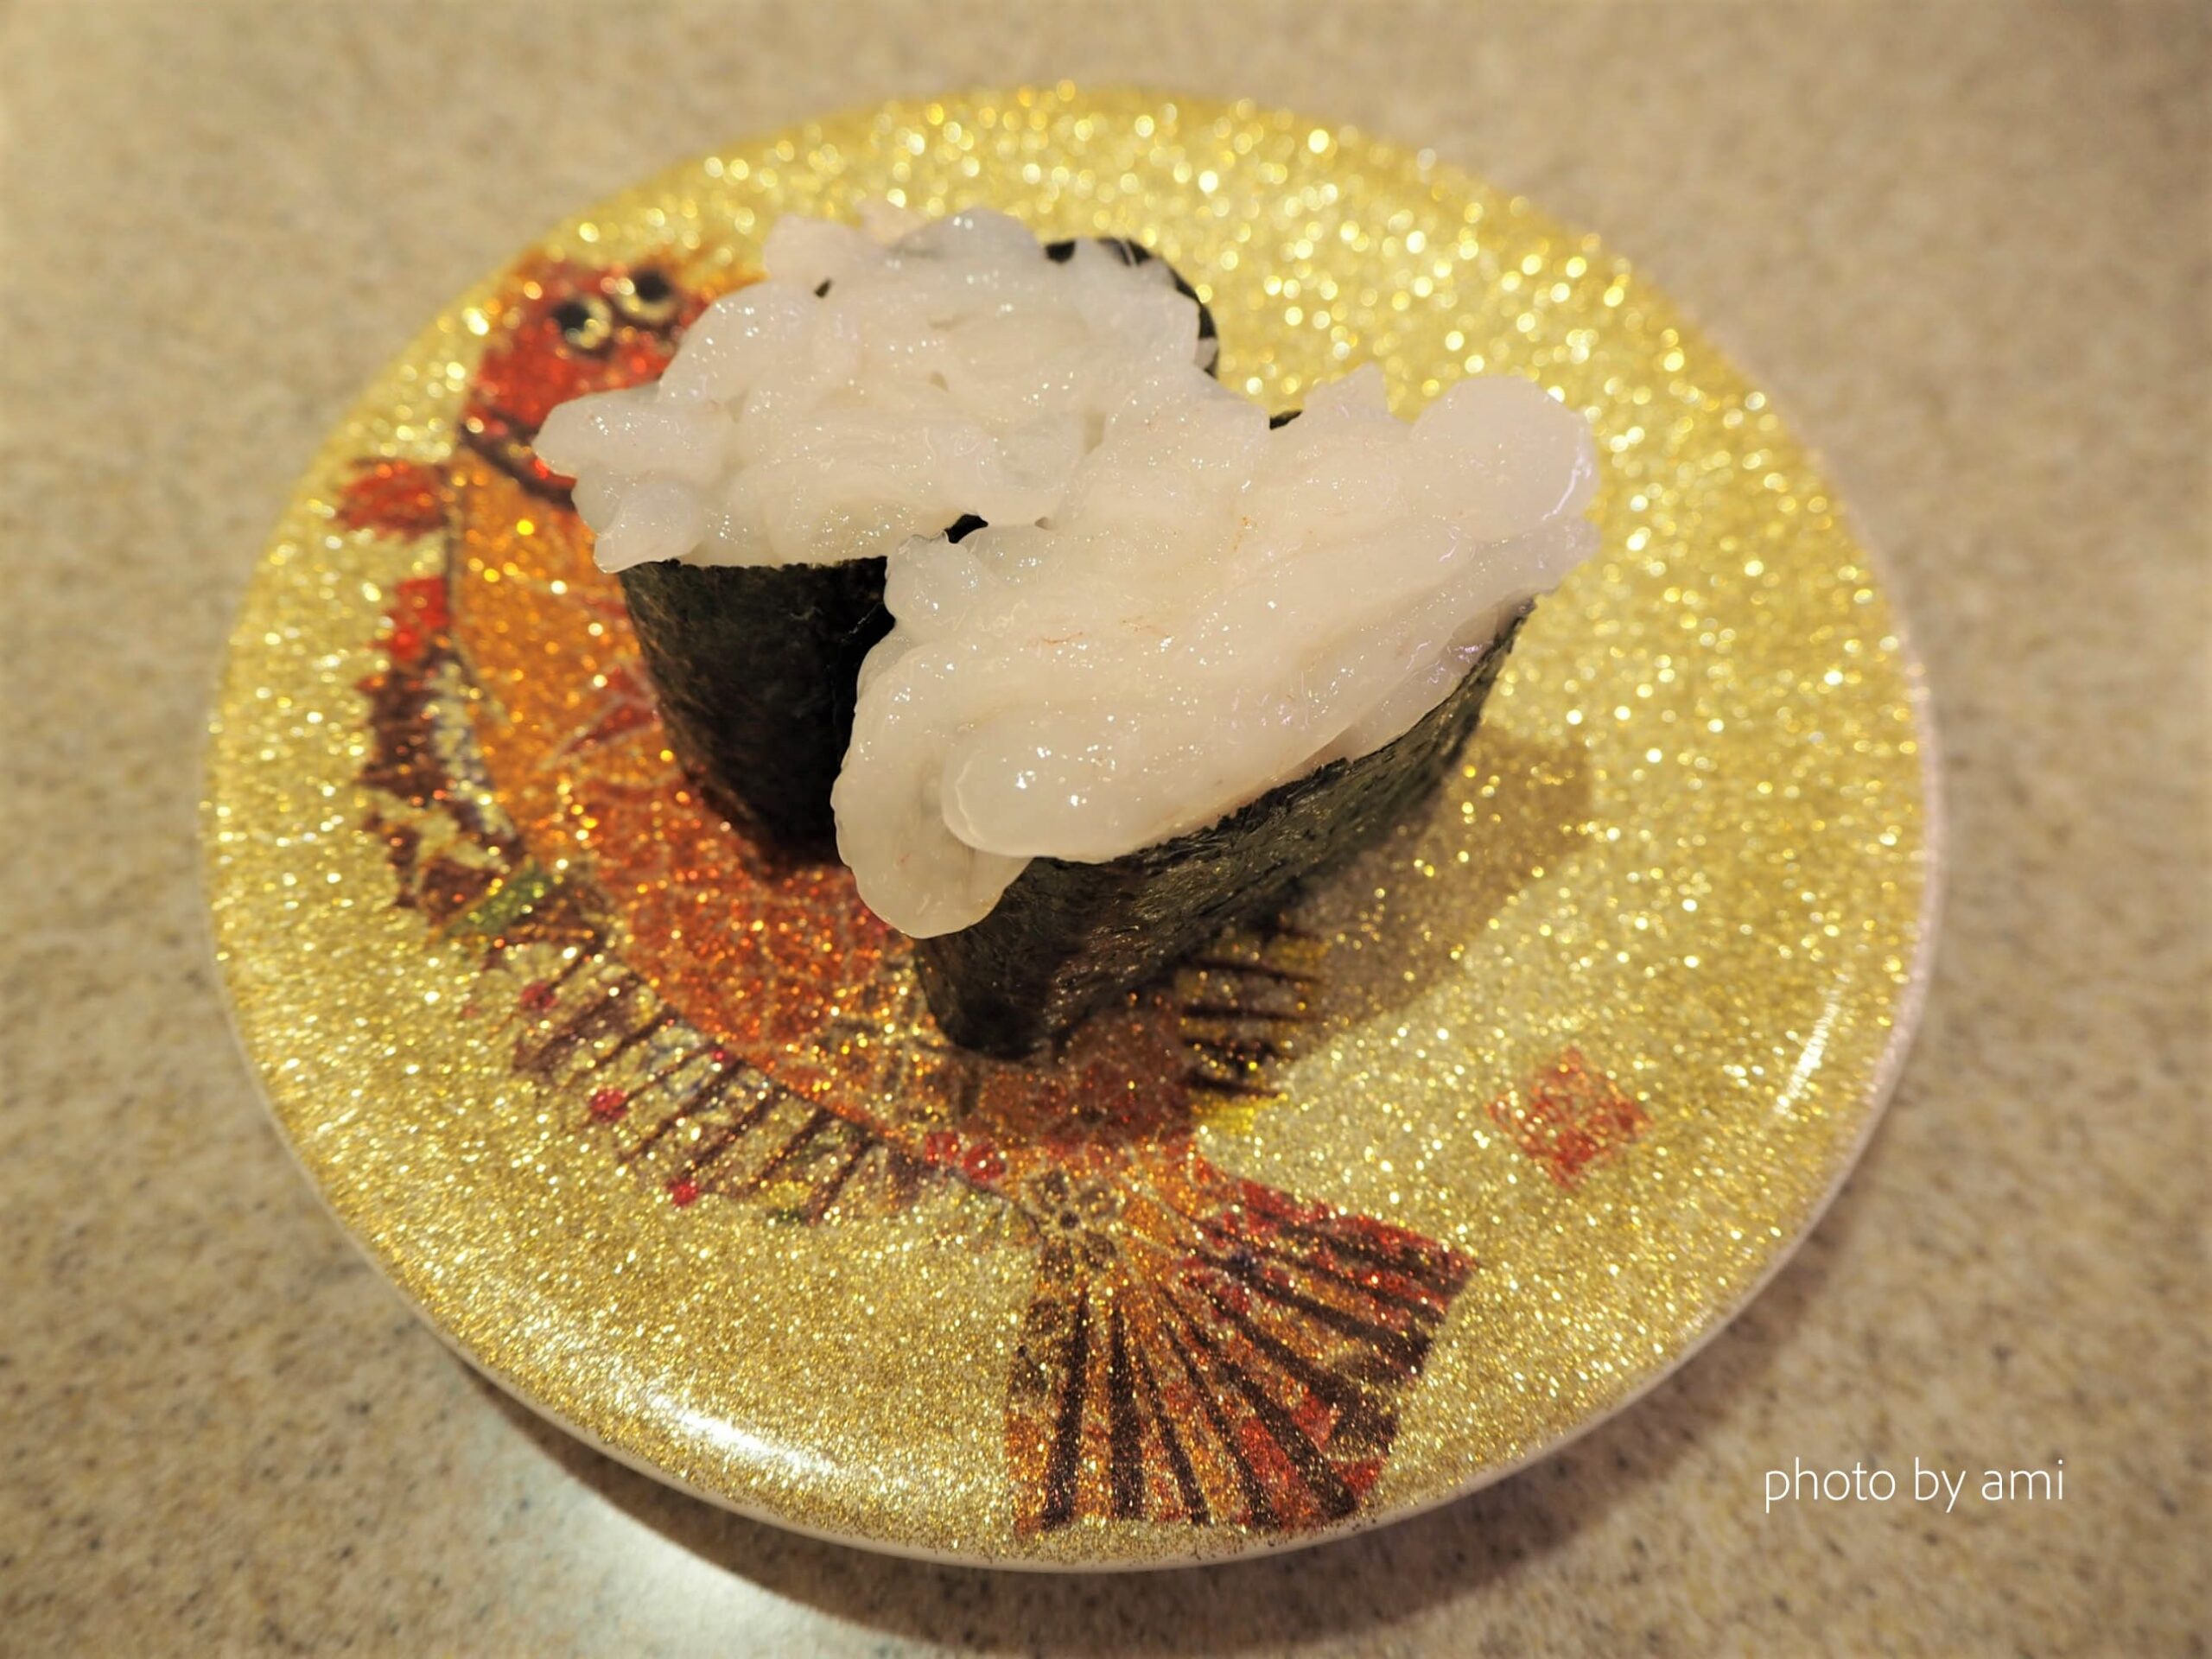 安い 美味い 新鮮の三拍子 富山の寿司屋なら 氷見きときと寿司 で決まり 旅してる